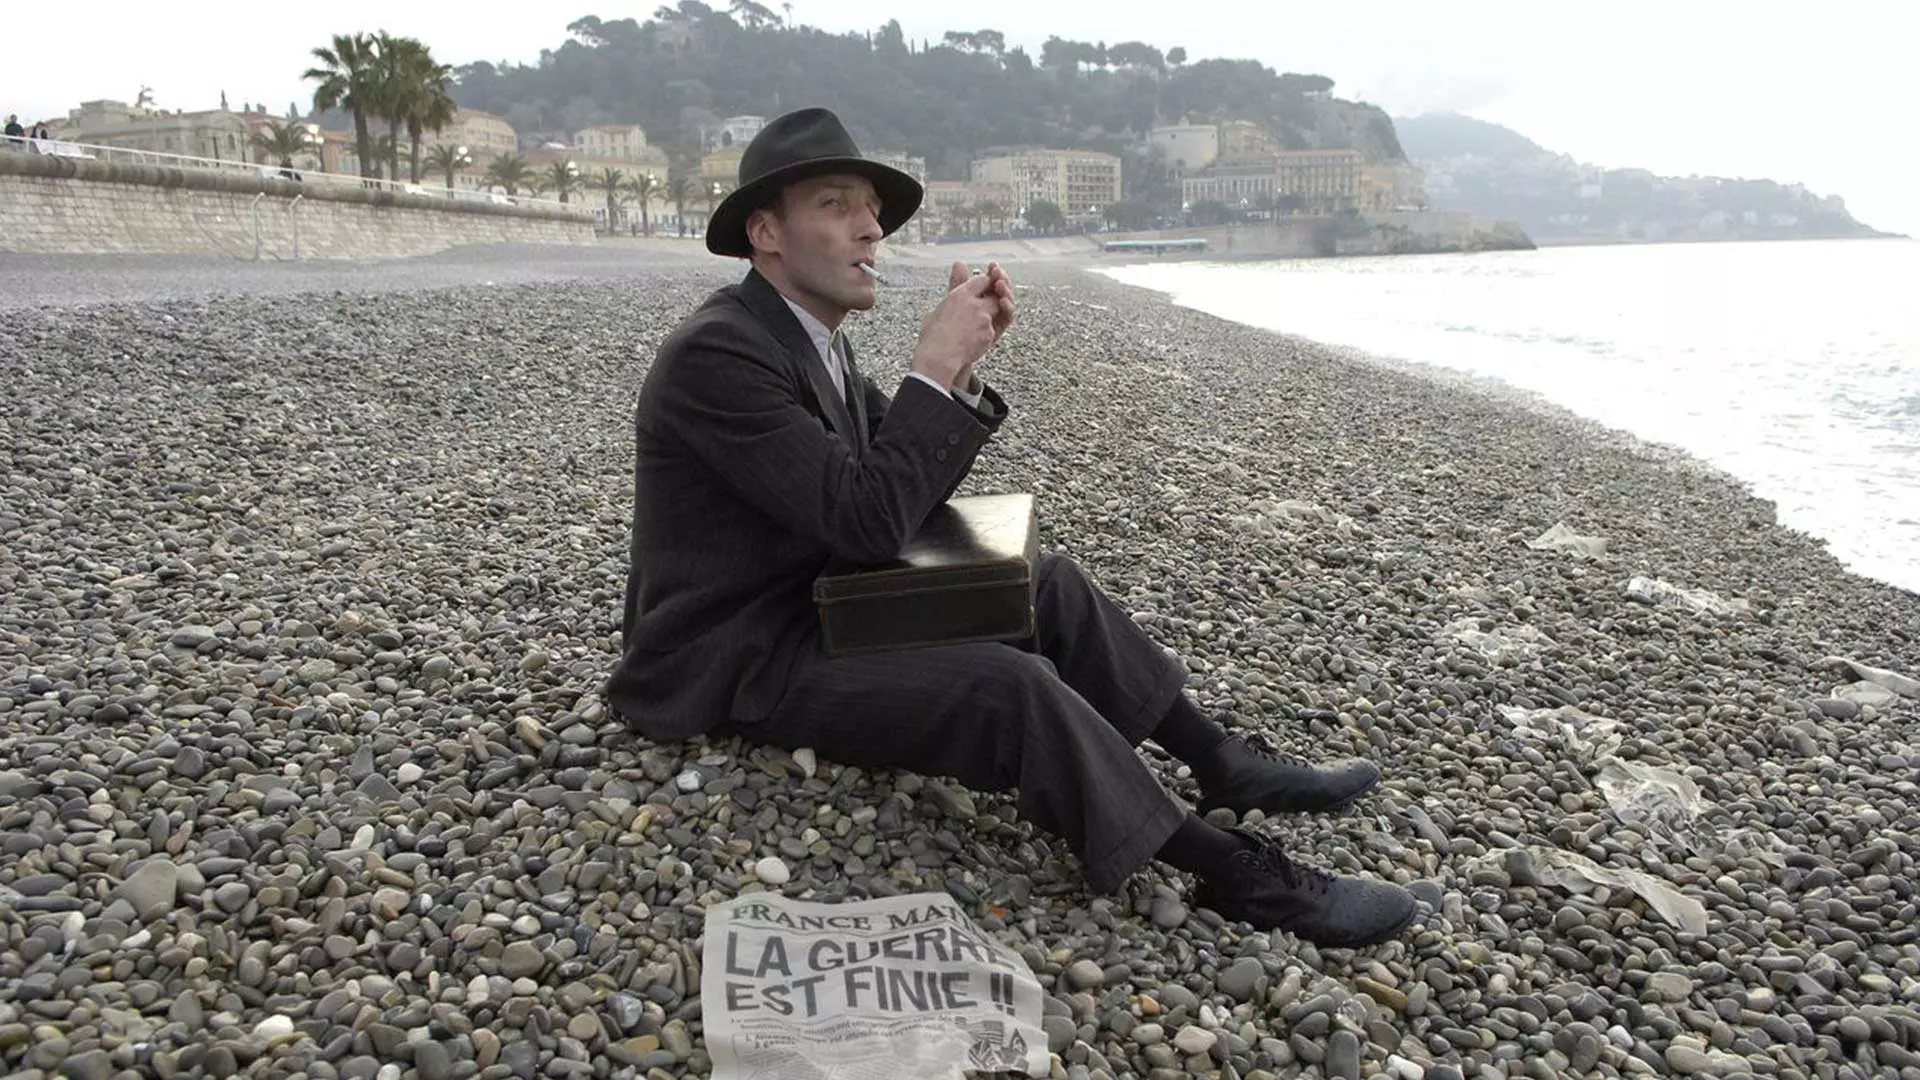 سالومون در کنار ساحل در فیلم جاعلان پول